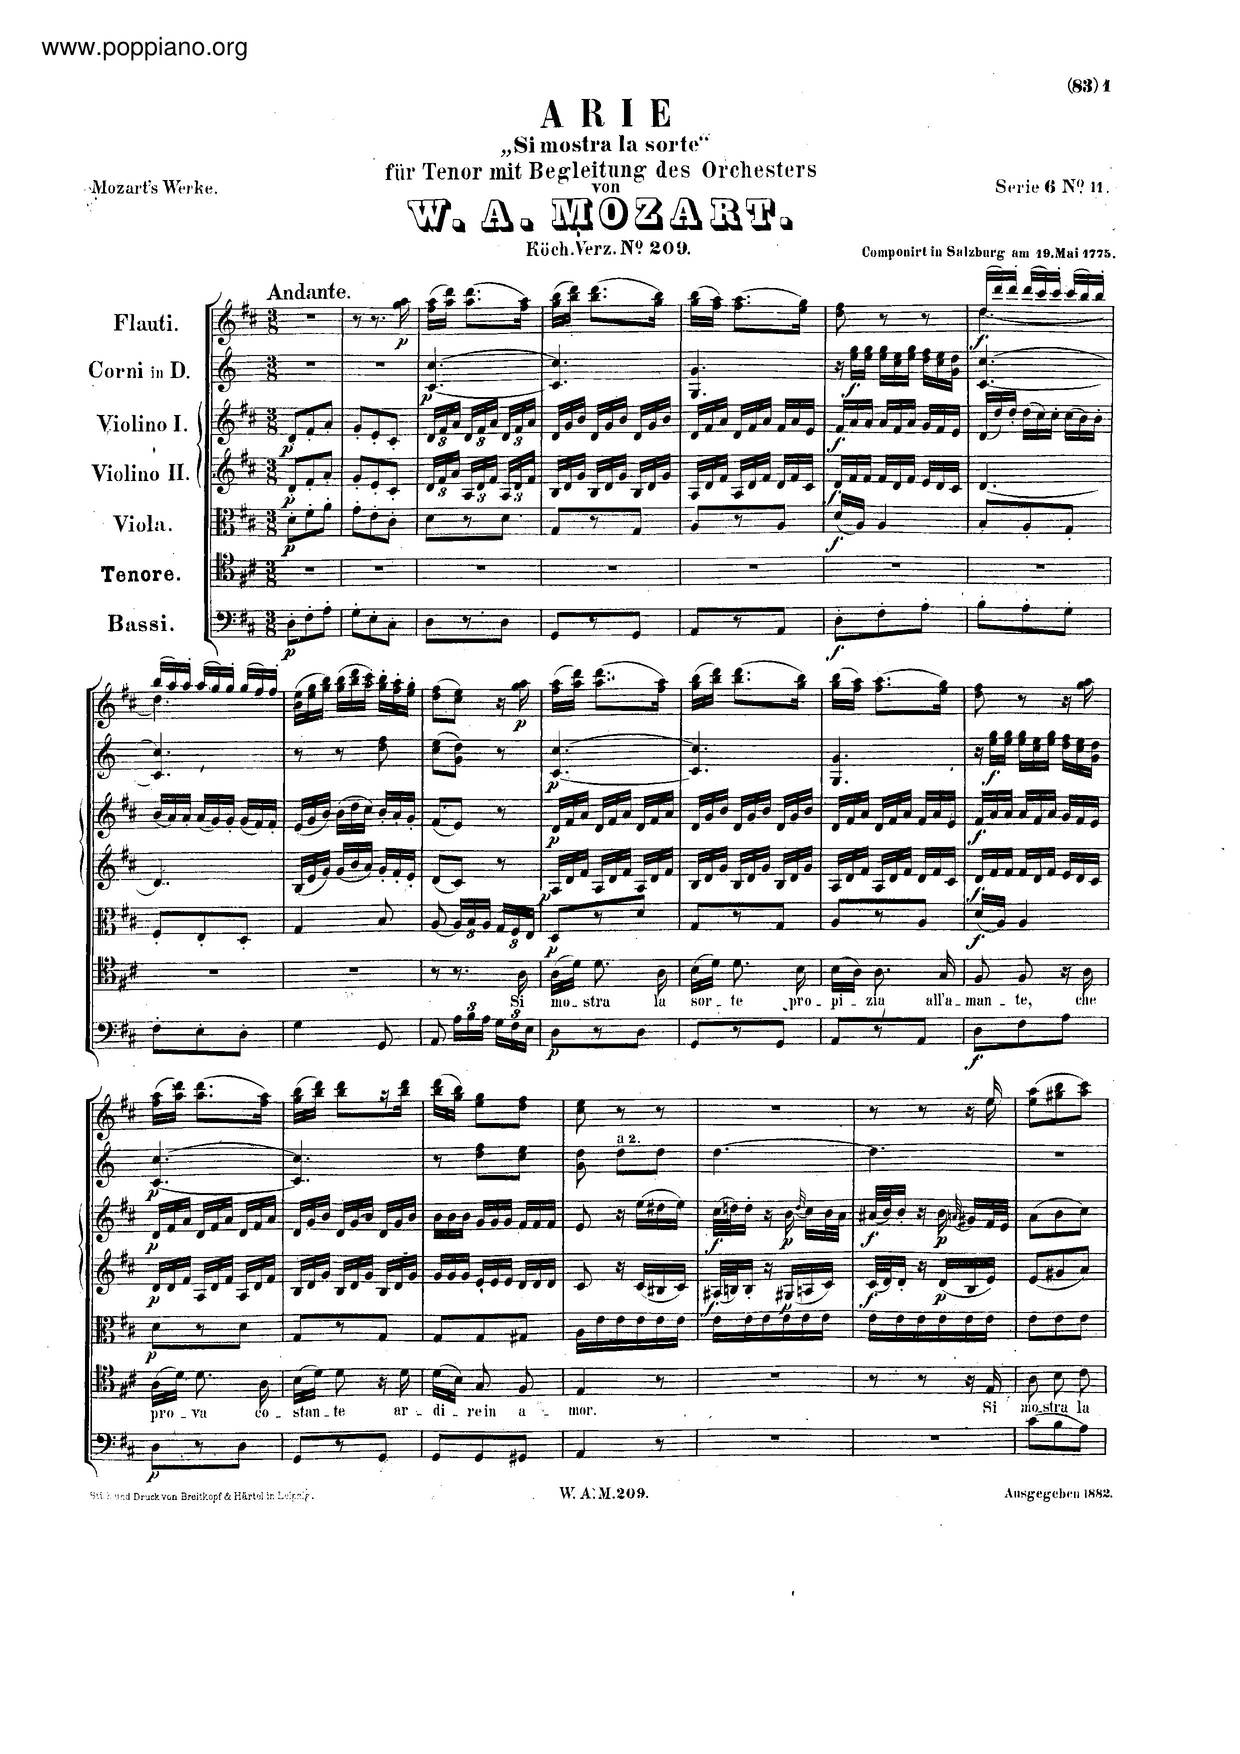 Si Mostra La Sorte, K. 209 Score